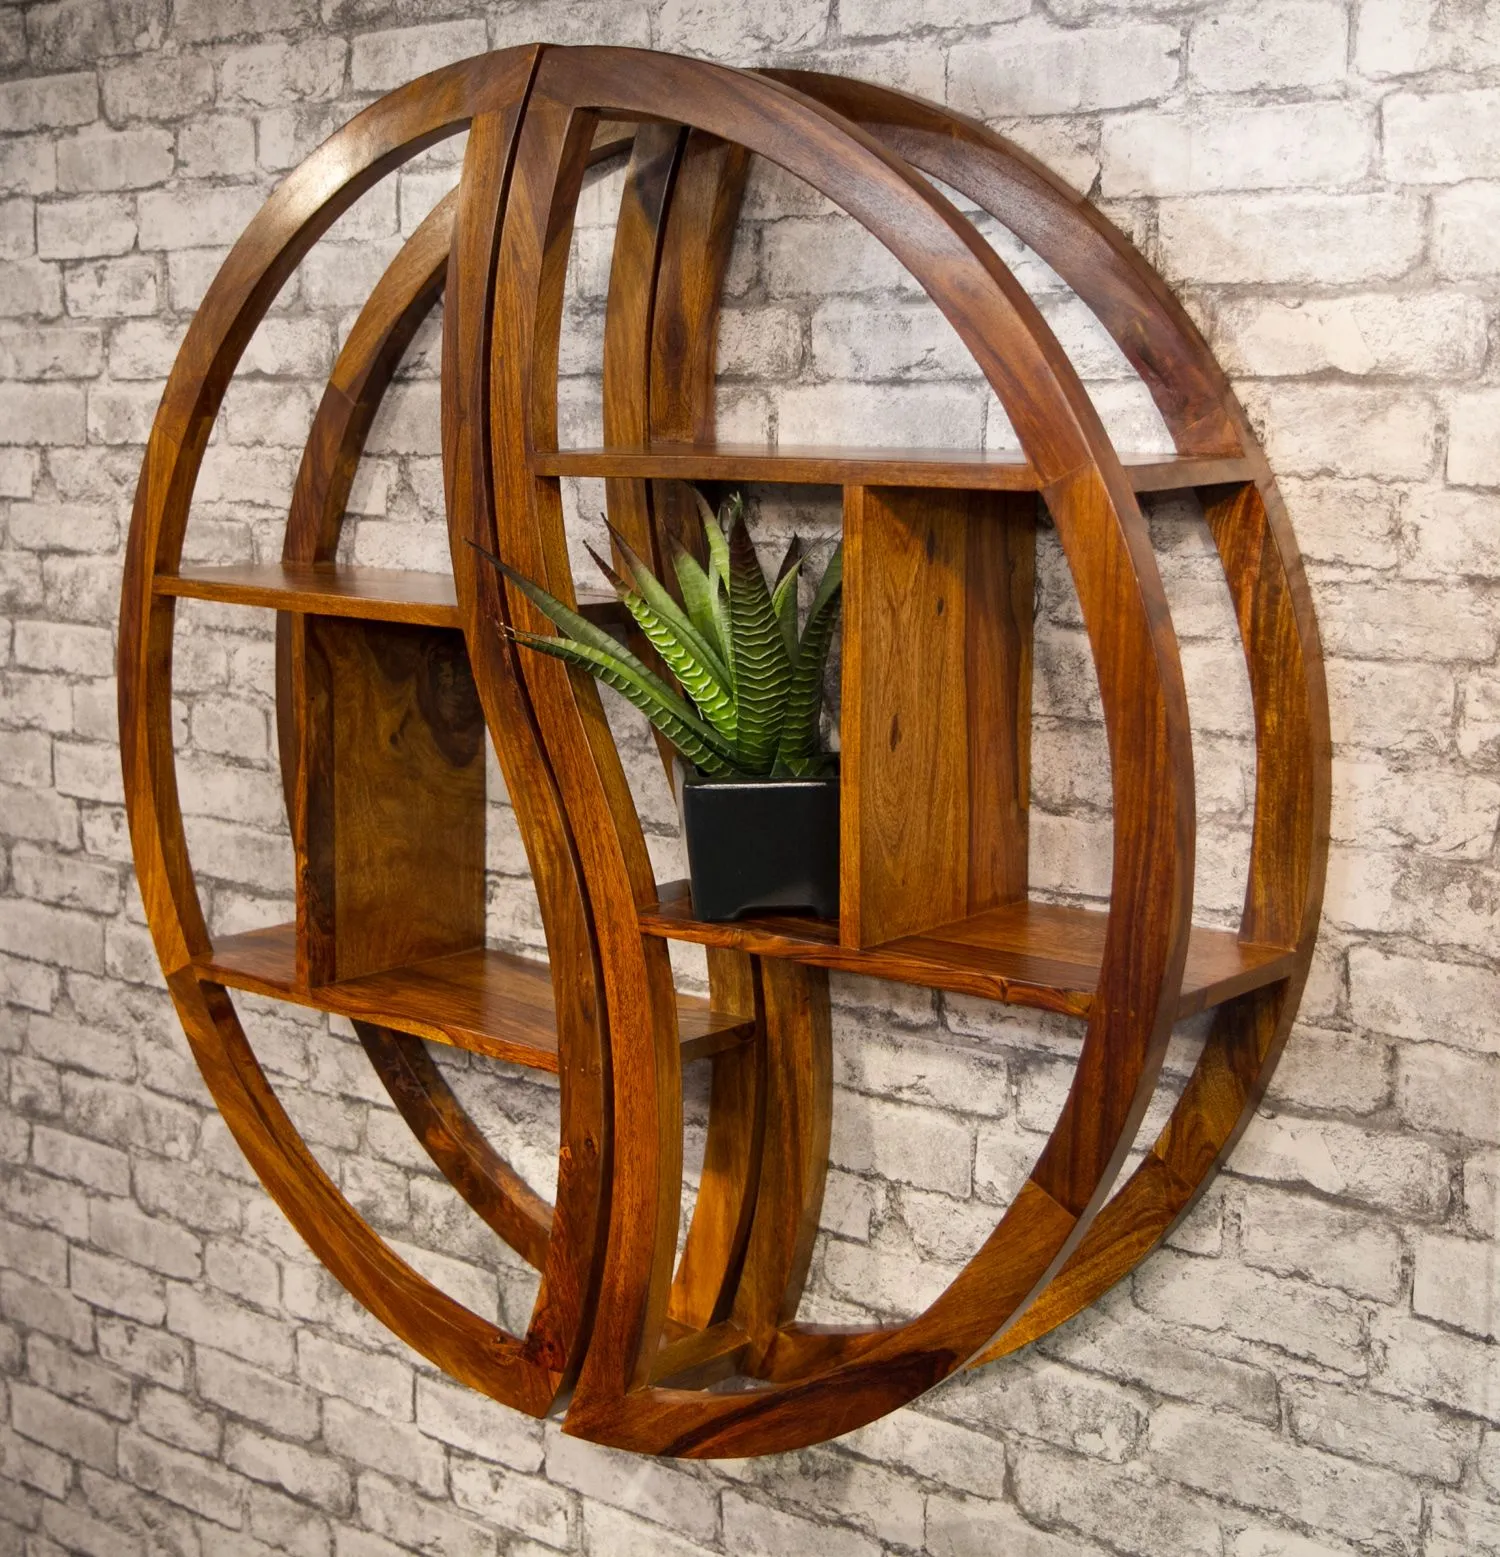 Thiết kế mẫu kệ gỗ treo tường hình tròn độc đáo